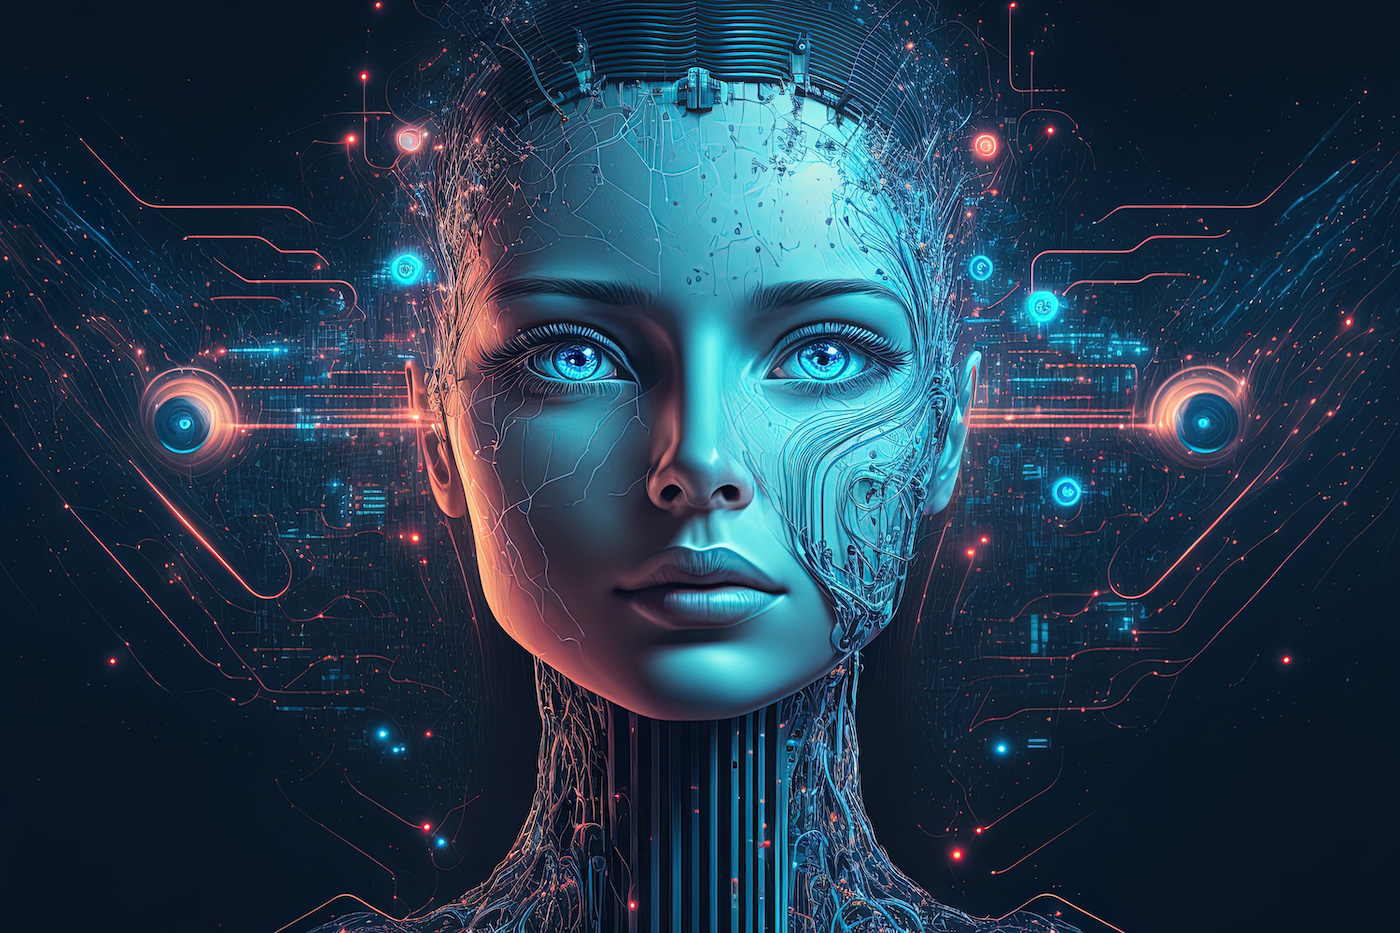 这是一张描绘半人脸半机械脸的图像，展示了高科技感的人工智能或机器人，具有复杂的电路和光效，颜色以蓝色为主。